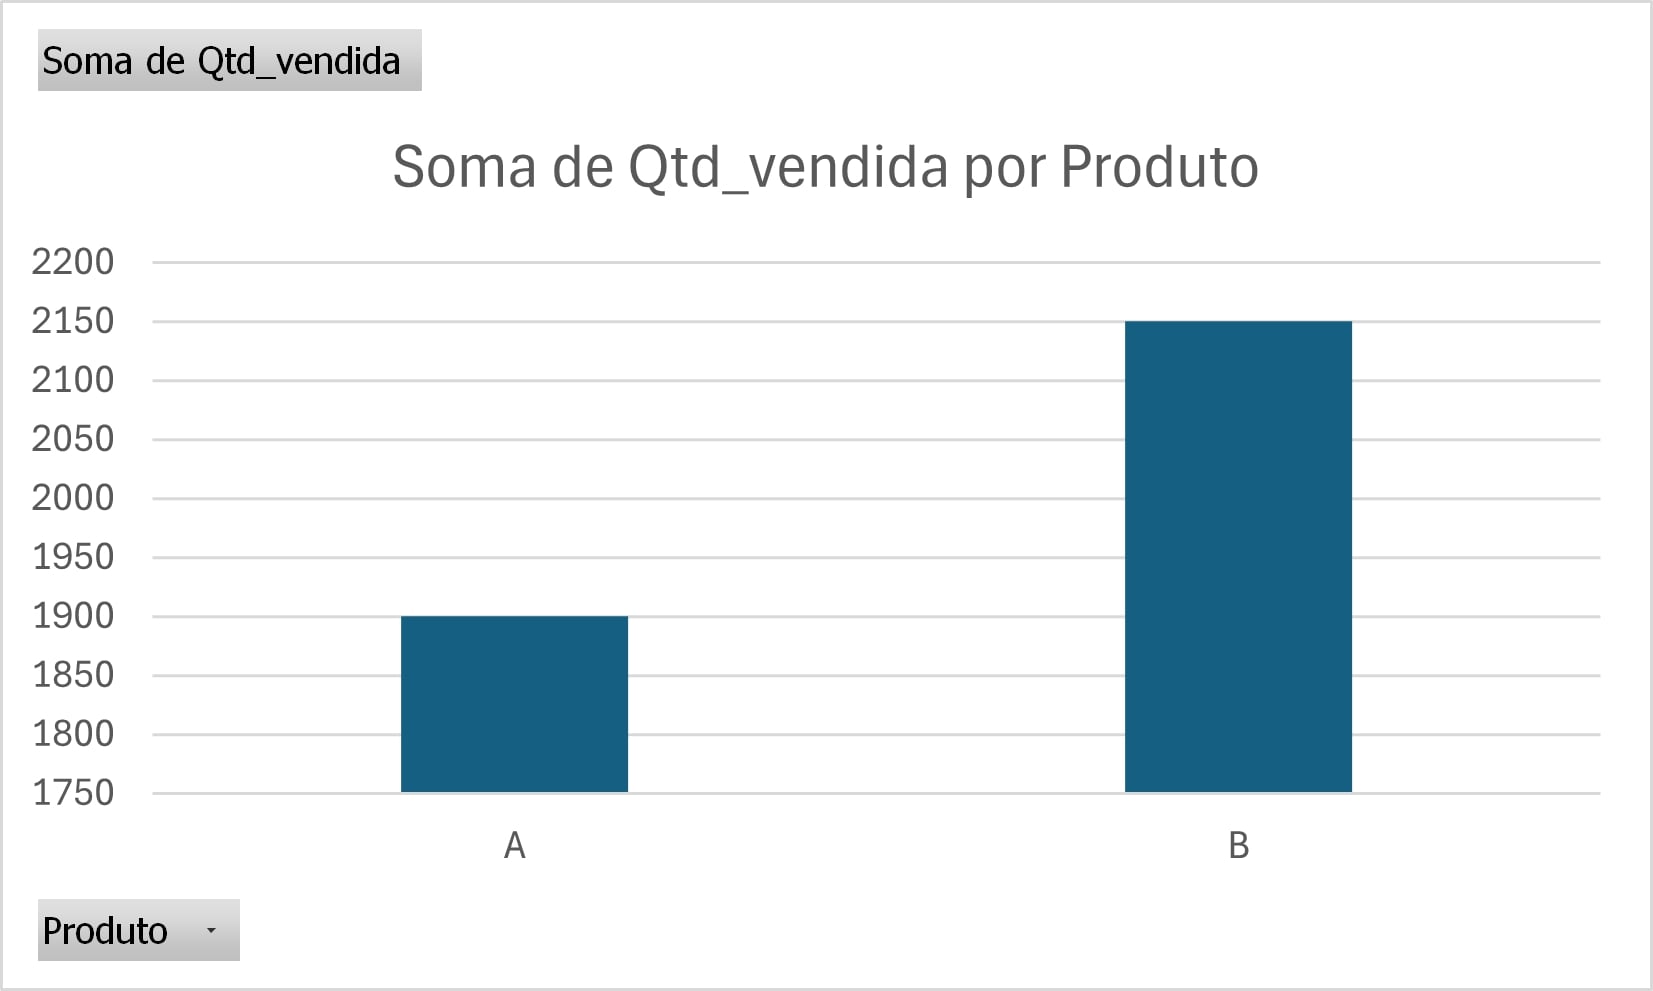 alt-text: Gráfico de colunas com o título “Soma de Qtd_vendida por Produto”. O gráfico possui 2 barras de diferentes tamanhos representando as vendas dos produtos A e B, respectivamente. Todas as colunas estão com a cor azul. O eixo y começa em 1.750 e vai até 2.200